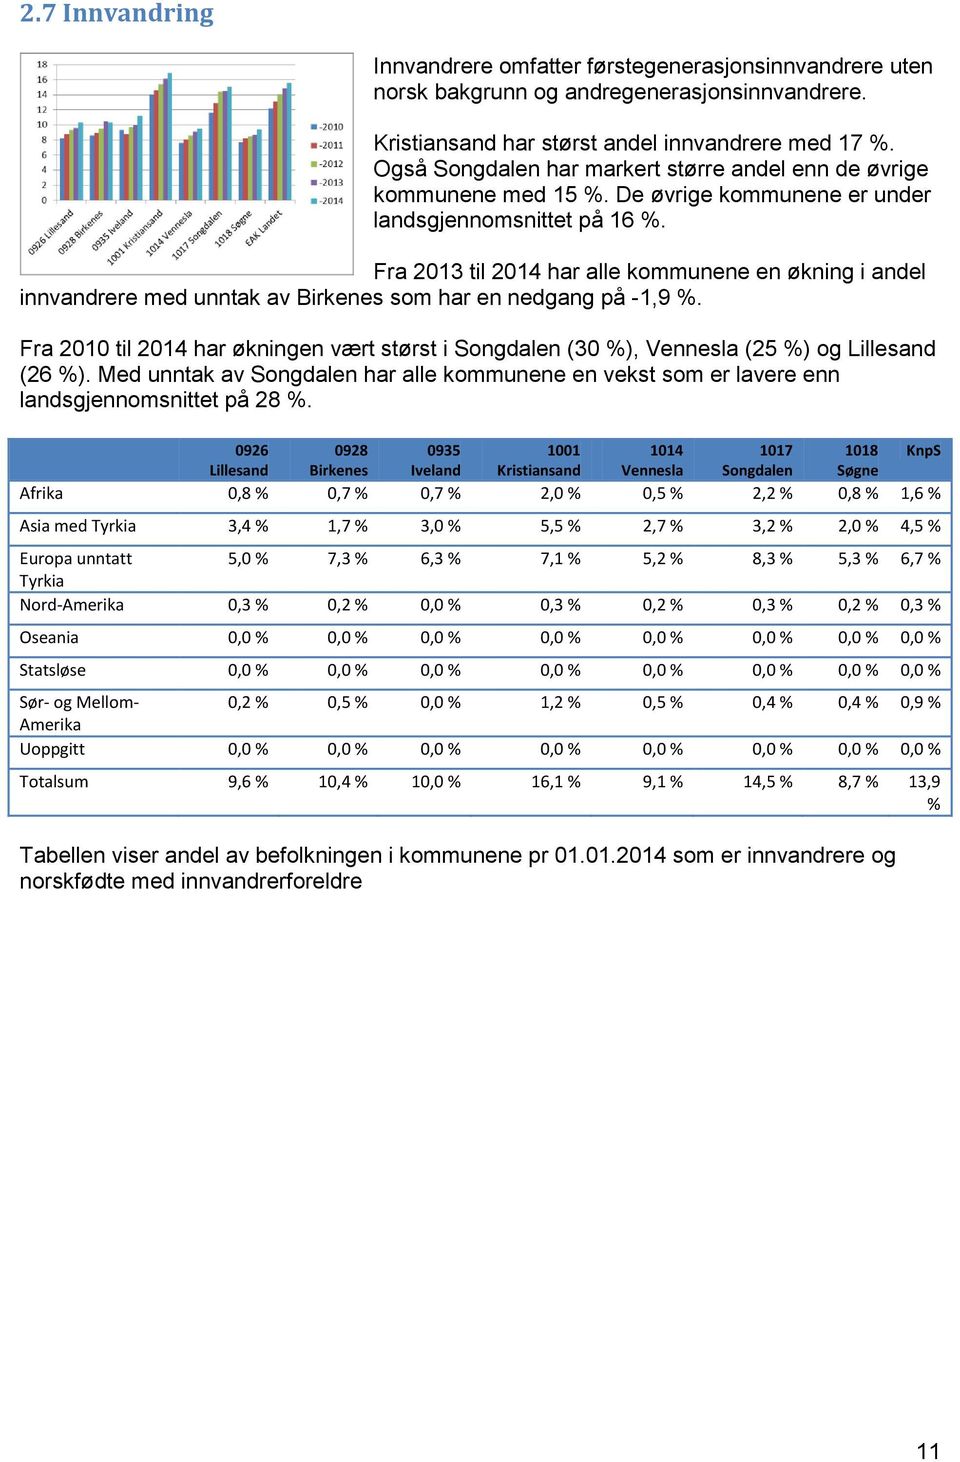 Fra 2013 til 2014 har alle kommunene en økning i andel innvandrere med unntak av Birkenes som har en nedgang på -1,9 %.